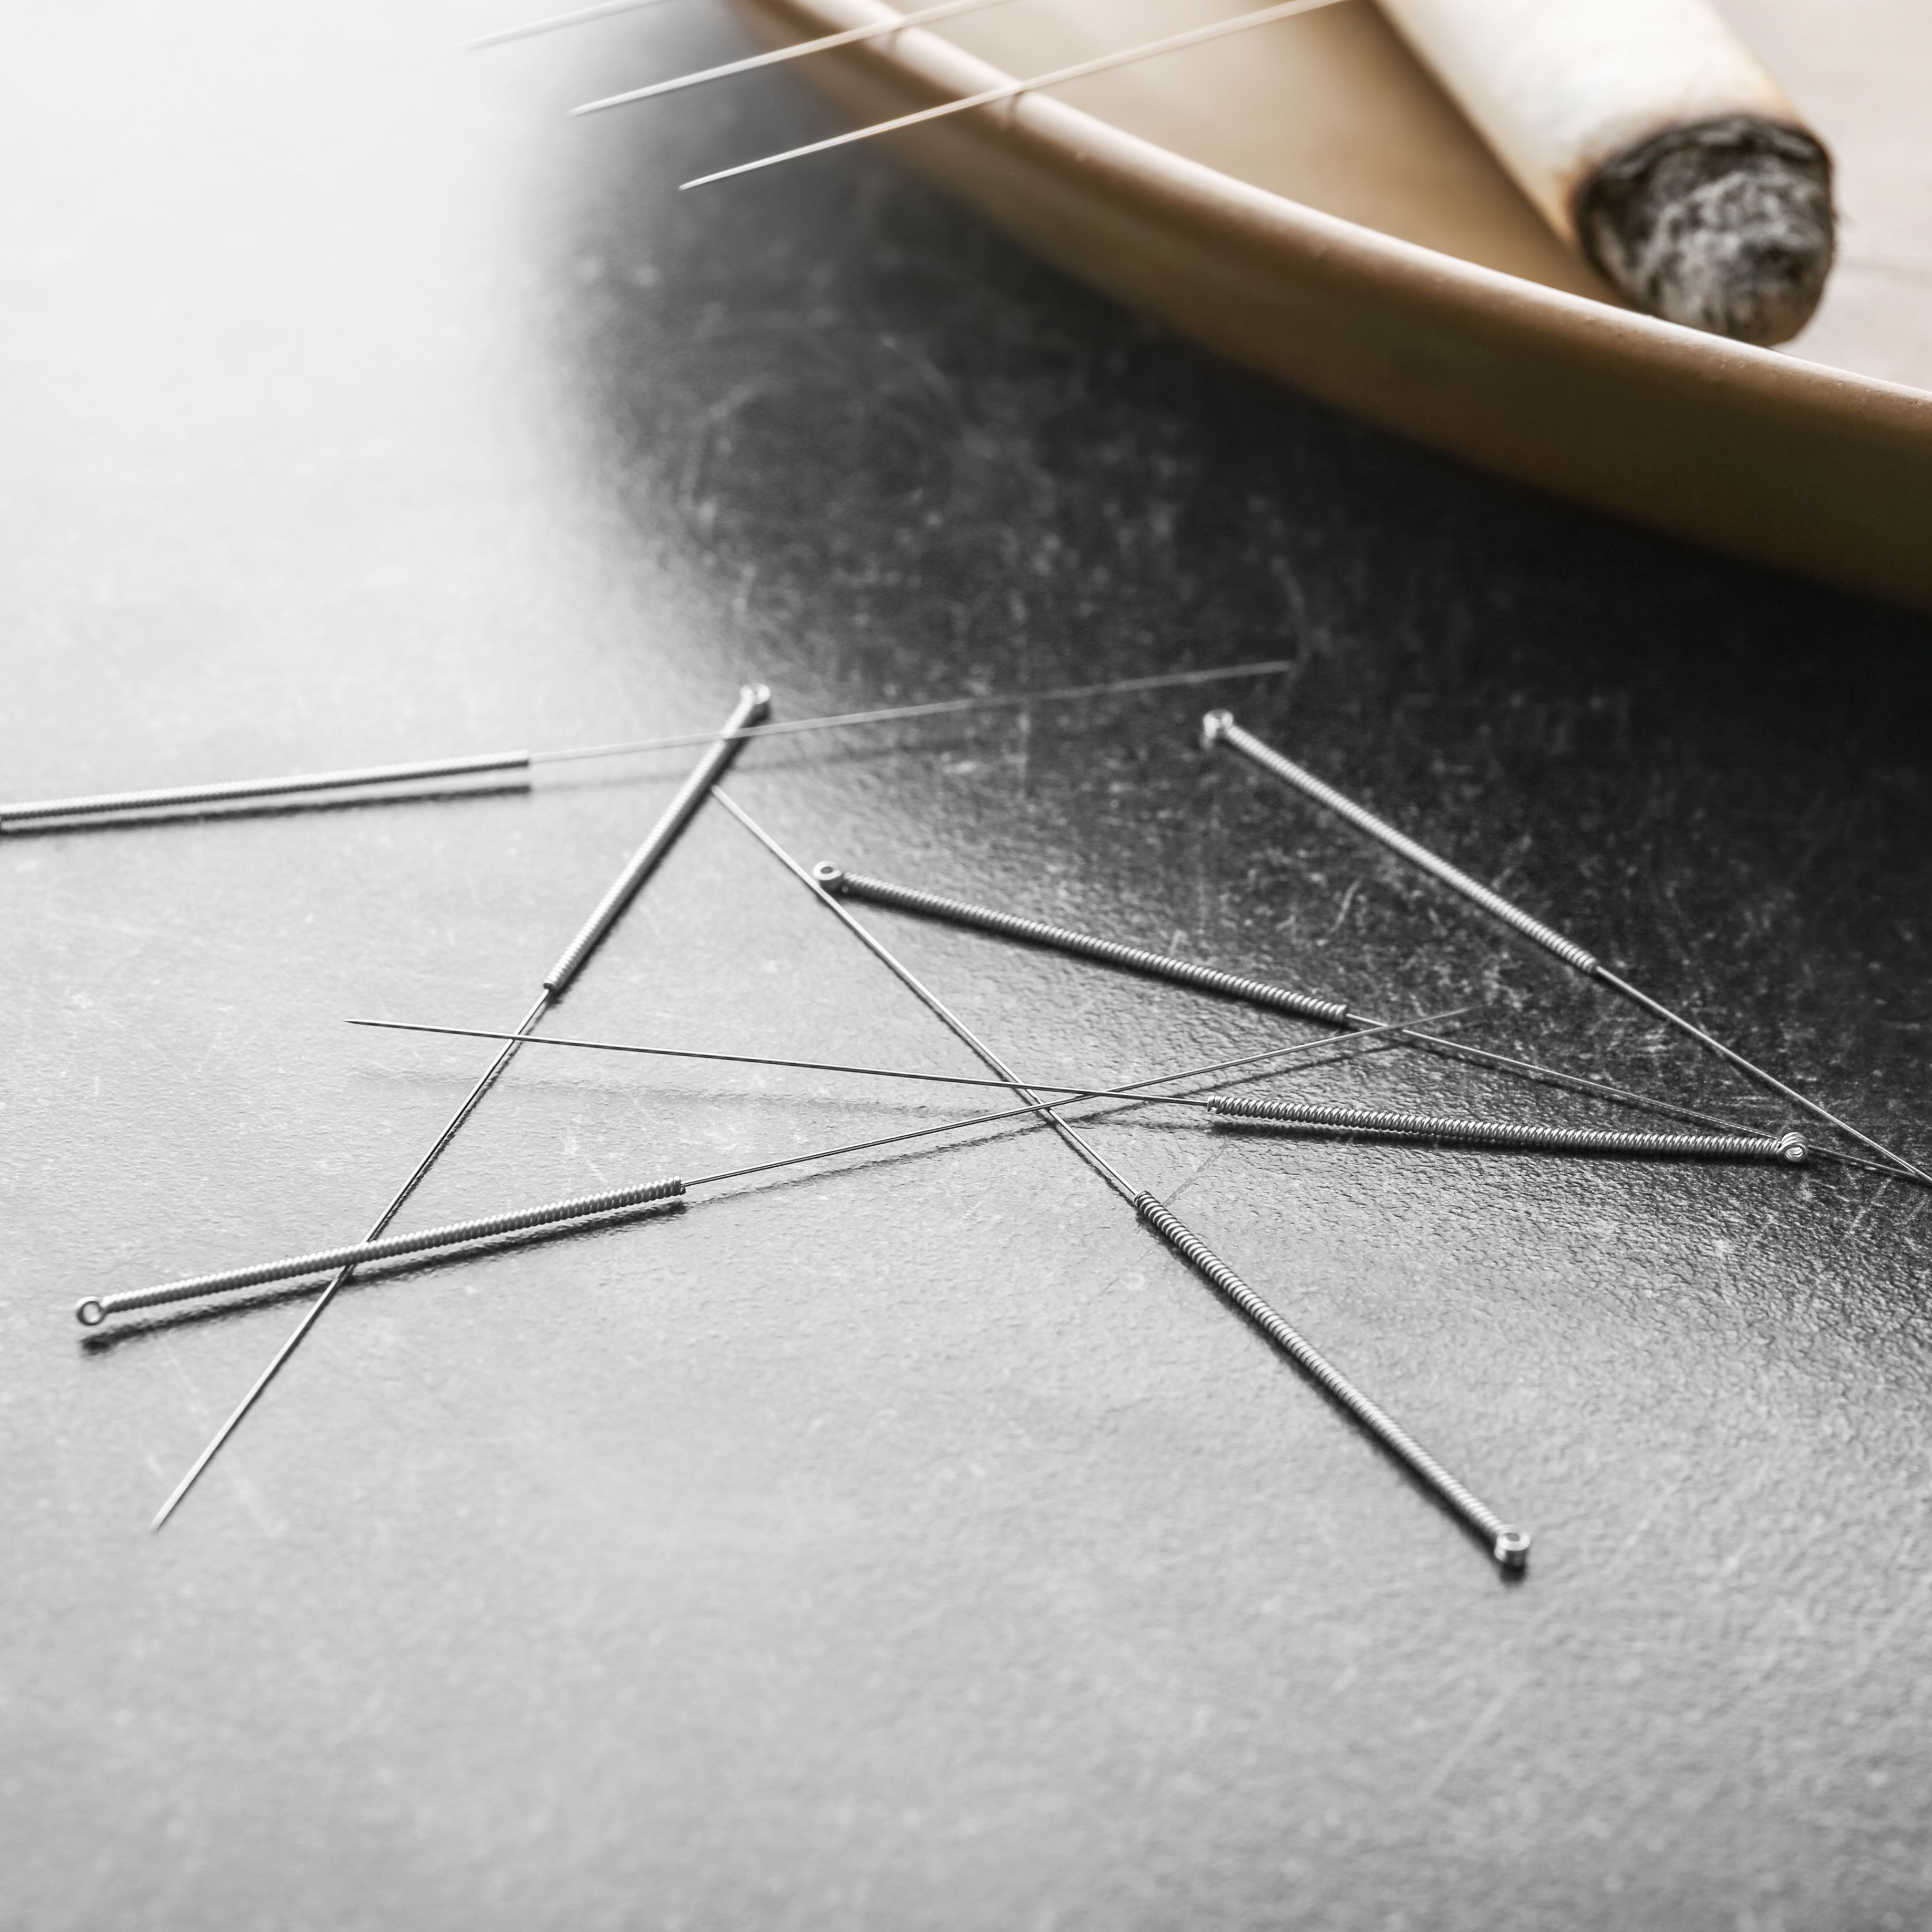 Das Dry Needling ist eine Methode, die immer in Kombination mit manuellen Techniken angewendet wird. Im Dry Needling arbeitet man mit Akupunkturnadeln, hat aber ansonsten nichts mit der Akupunktur gemeinsam. Mit der Nadel erreicht man punktgenau die myofaszialen Triggerpunkte, die für den beklagten Schmerz ursächlich sind. So kann das trockene Nadeln eine wirksame Ergänzung bei akuten und chronischen Schmerzen sein. 